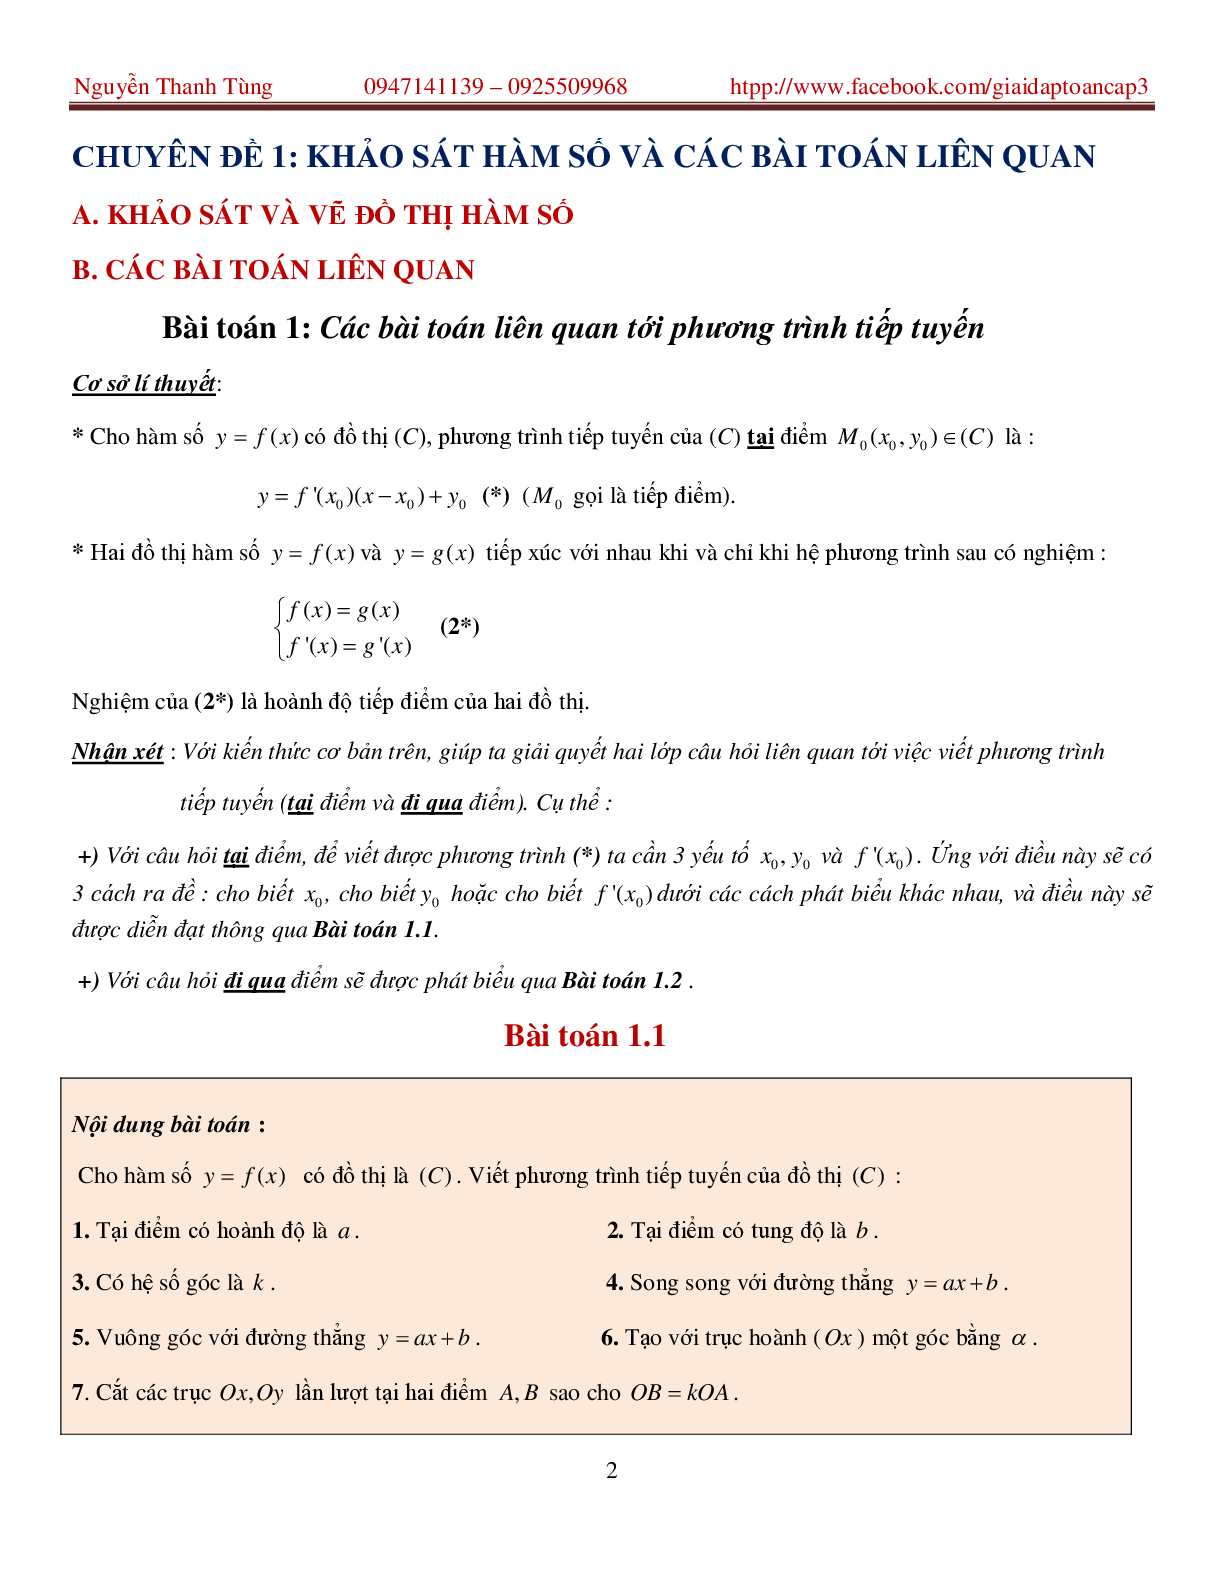 Khảo sát hàm số và các bài toán liên quan - bản 2 (trang 2)